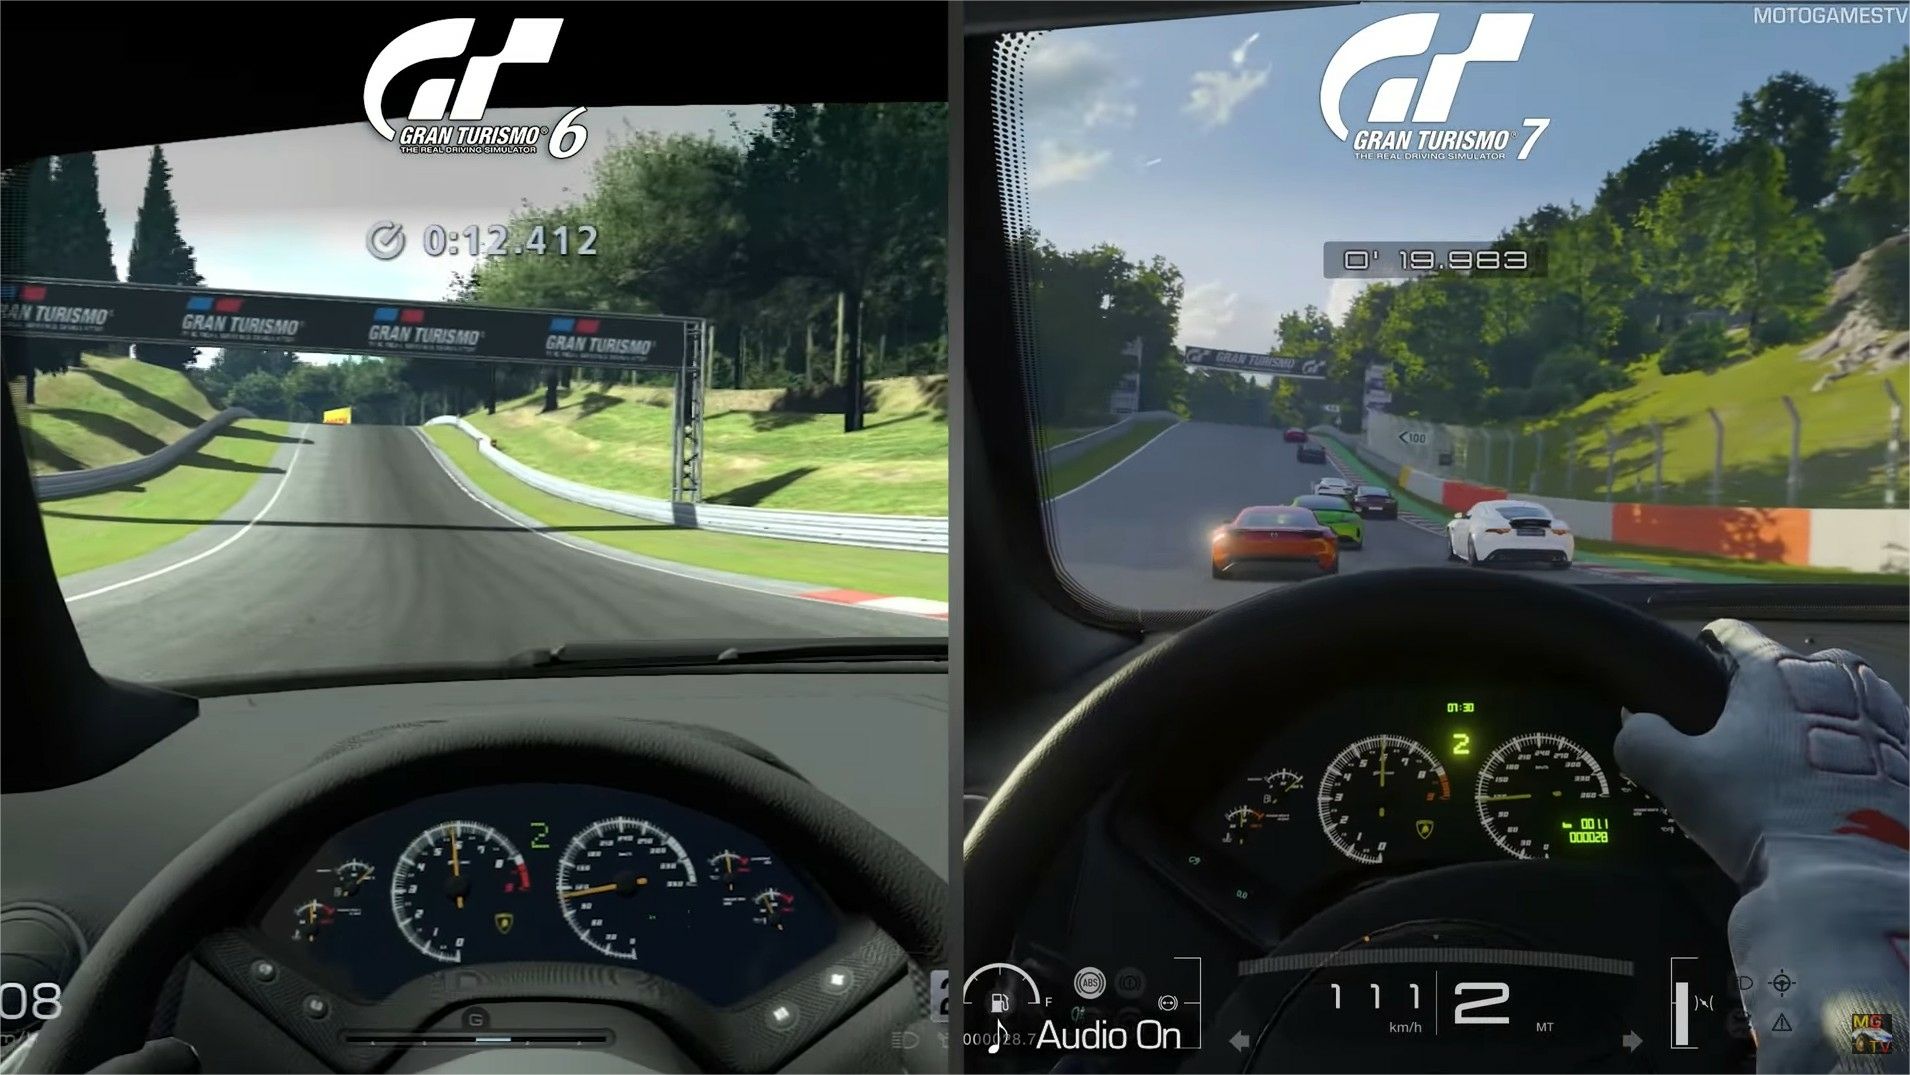 Gran Turismo 6 VS Gran Turismo 7 : la vidéo comparative